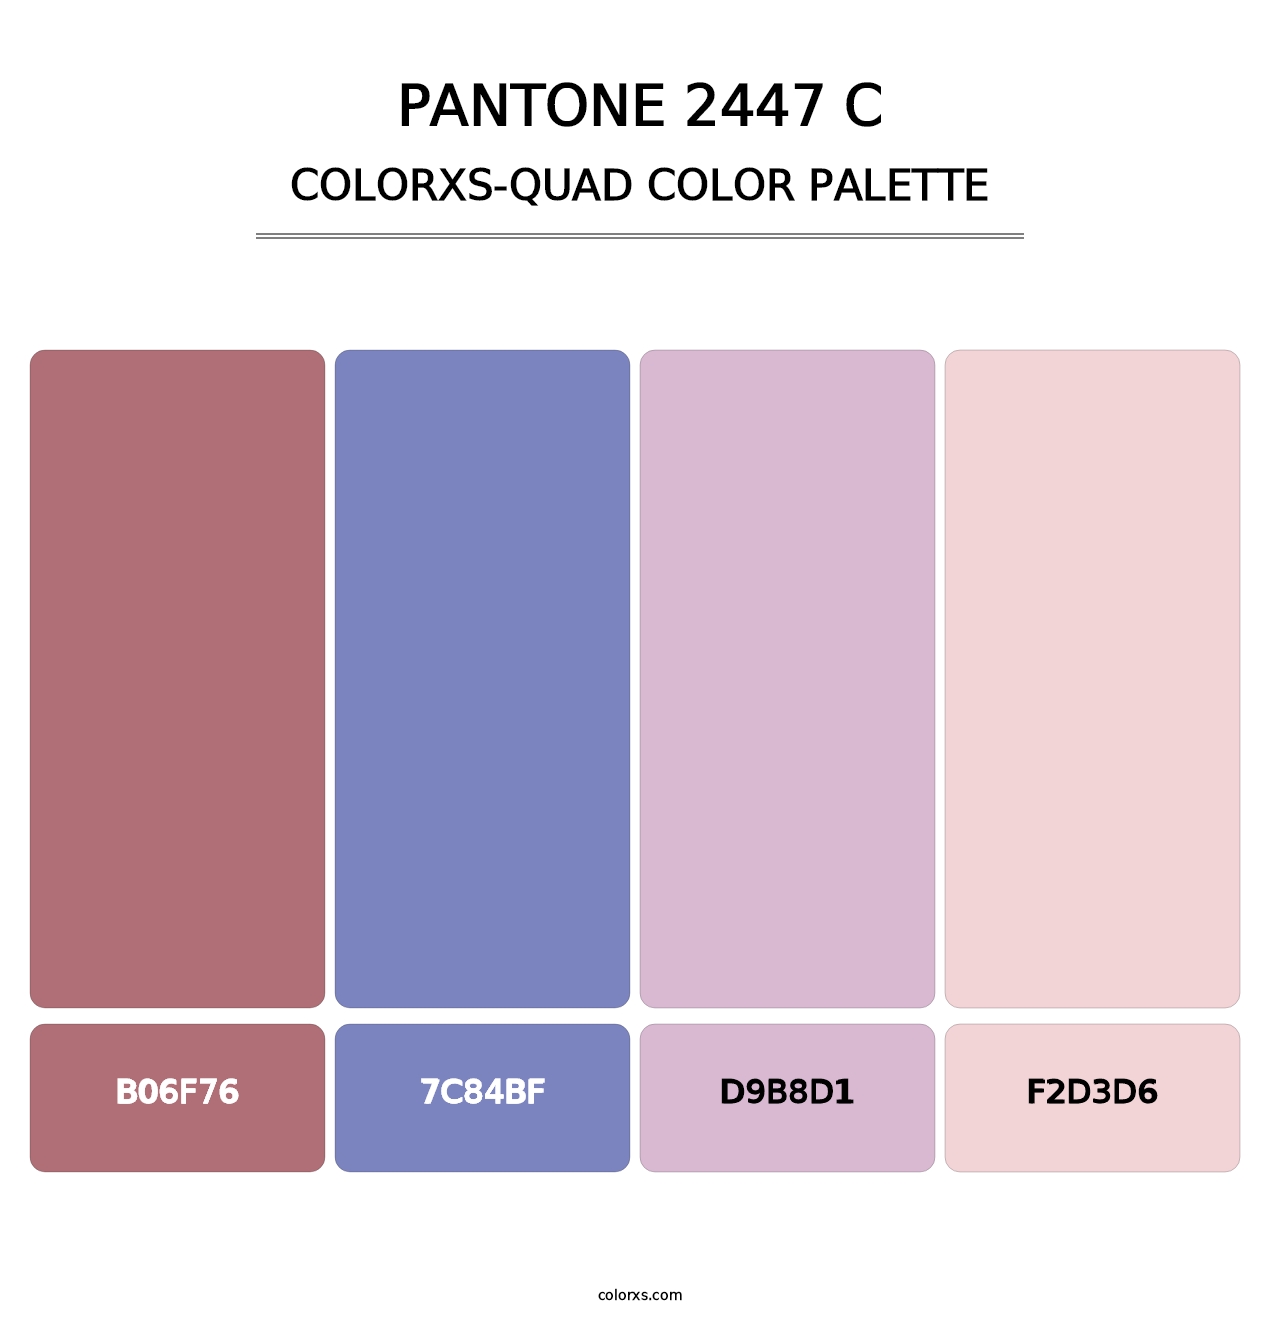 PANTONE 2447 C - Colorxs Quad Palette